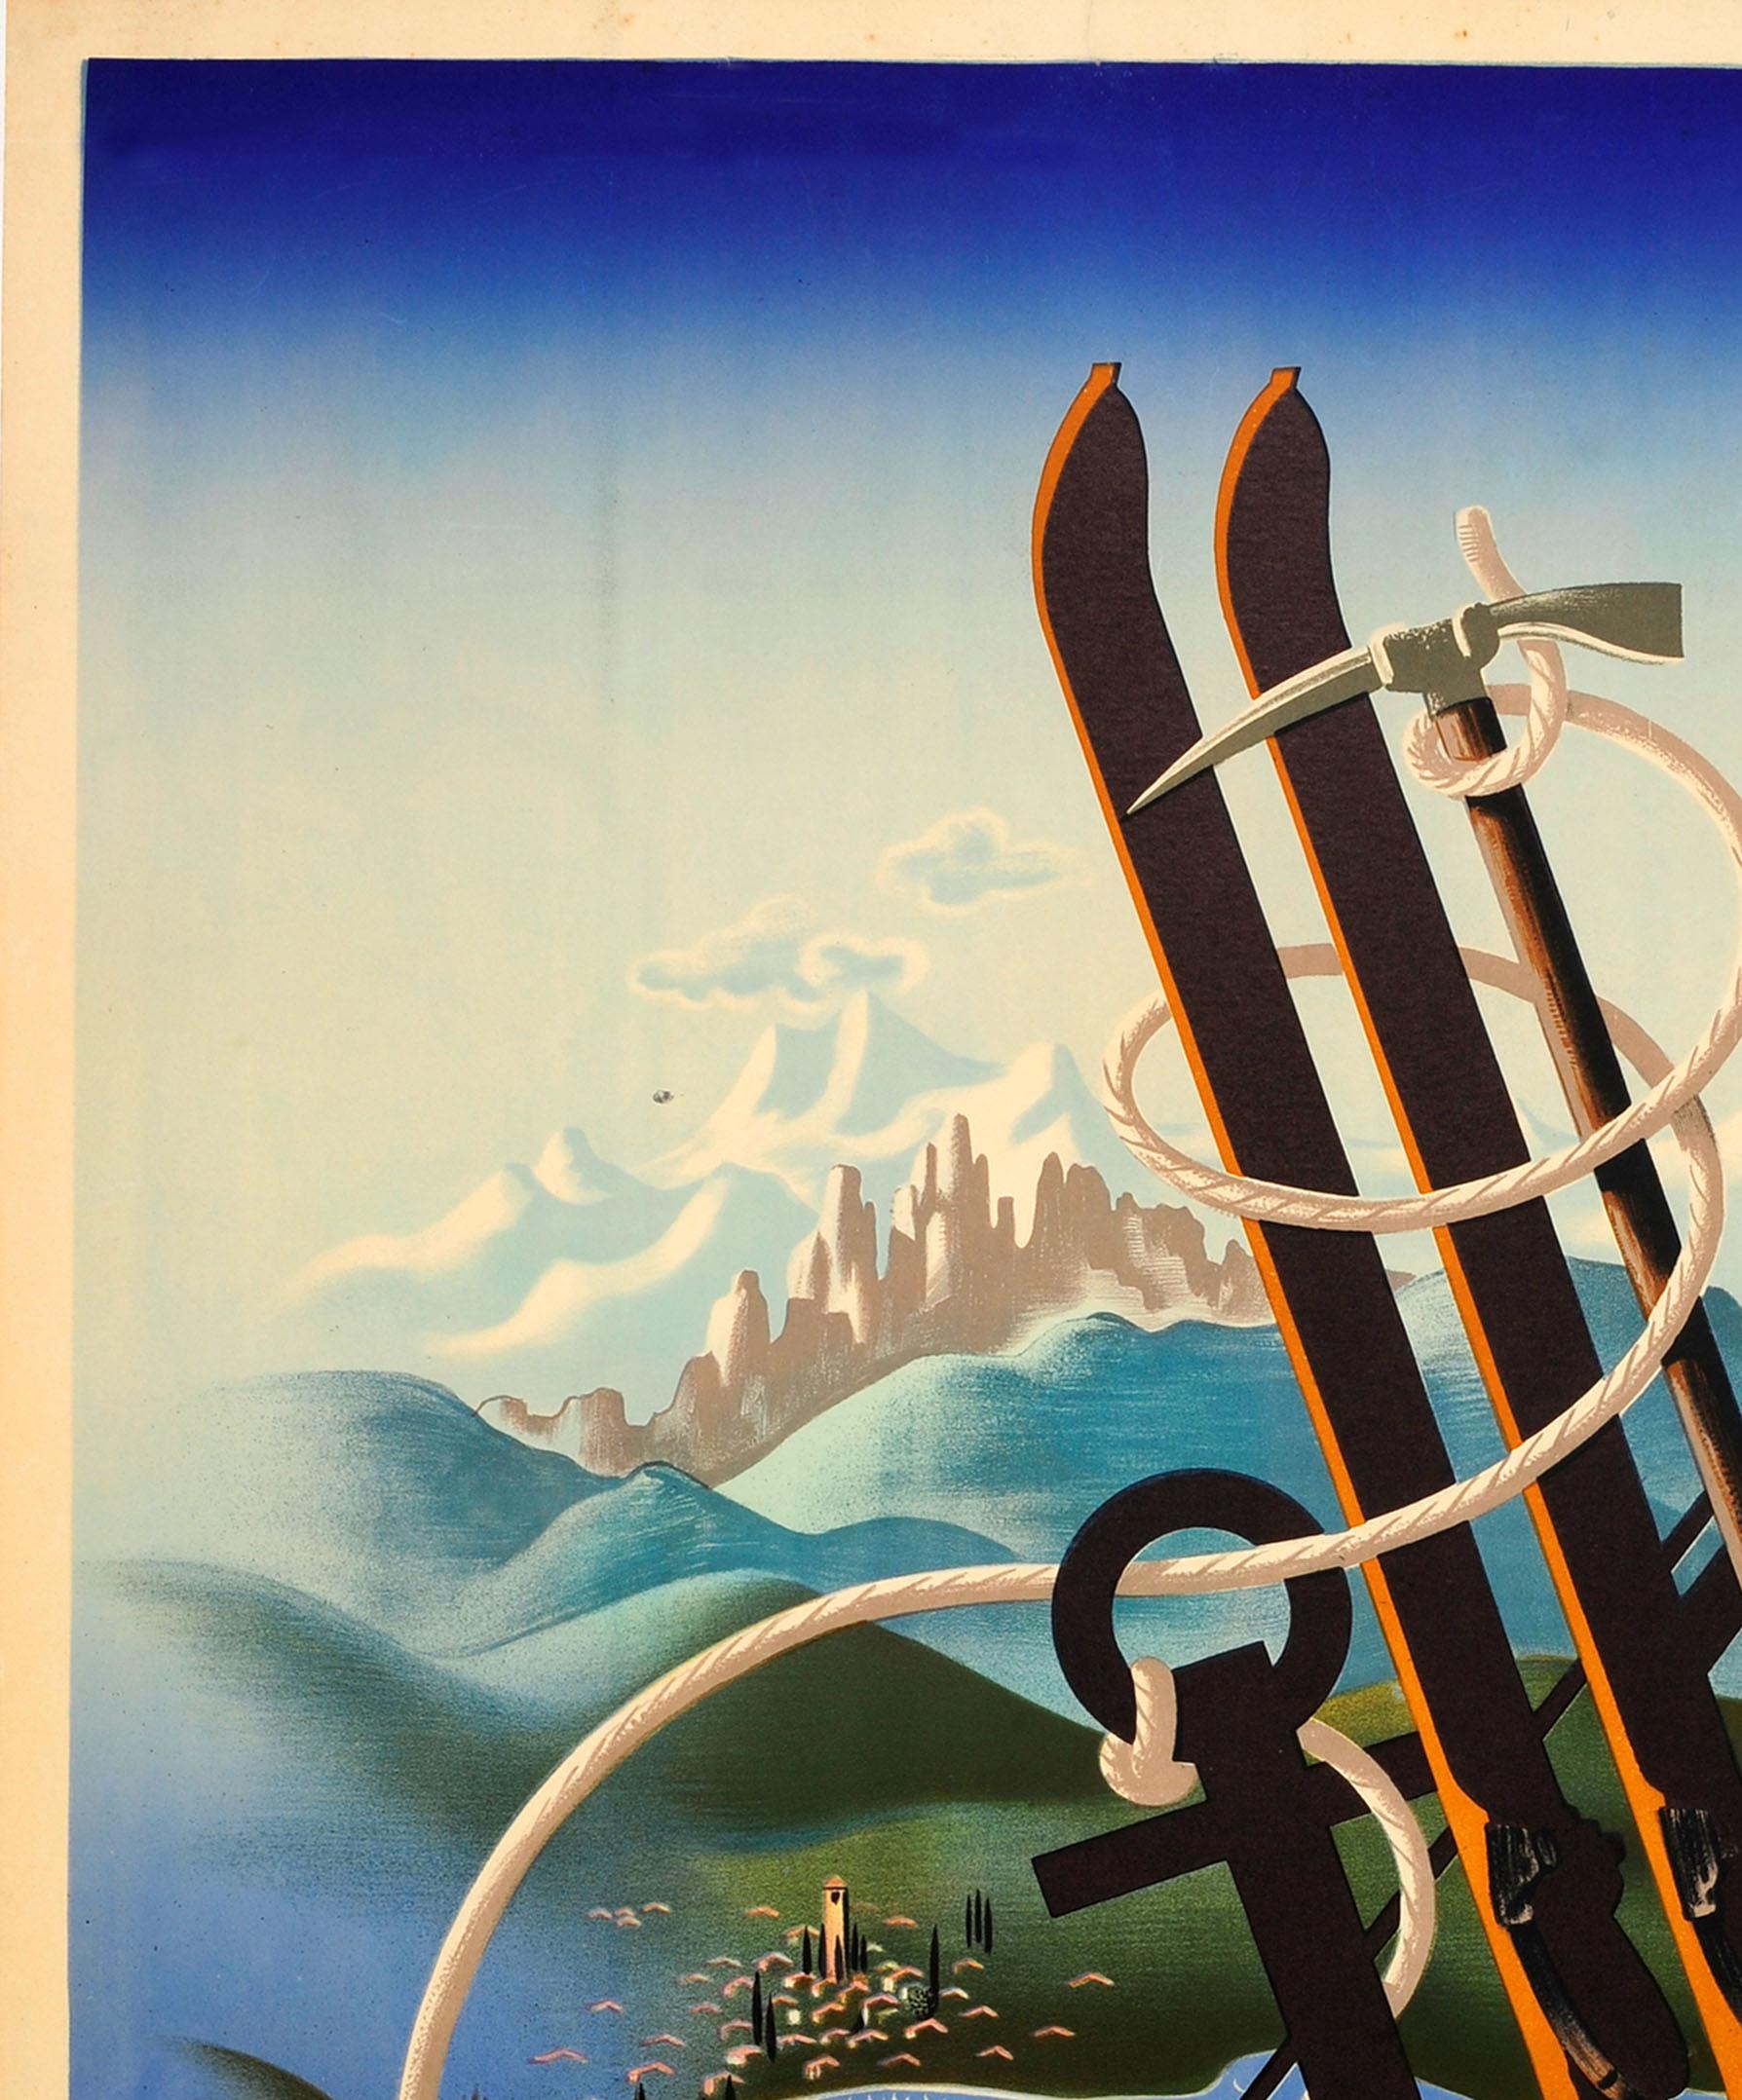 Affiche de voyage originale publiée par l'ENIT pour promouvoir l'Italie comme le pays idéal pour tous les sports, avec un superbe dessin de style Art déco réalisé par le célèbre affichiste A. M. Cassandre (Adolphe Jean-Marie Mouron ; 1901-1968)